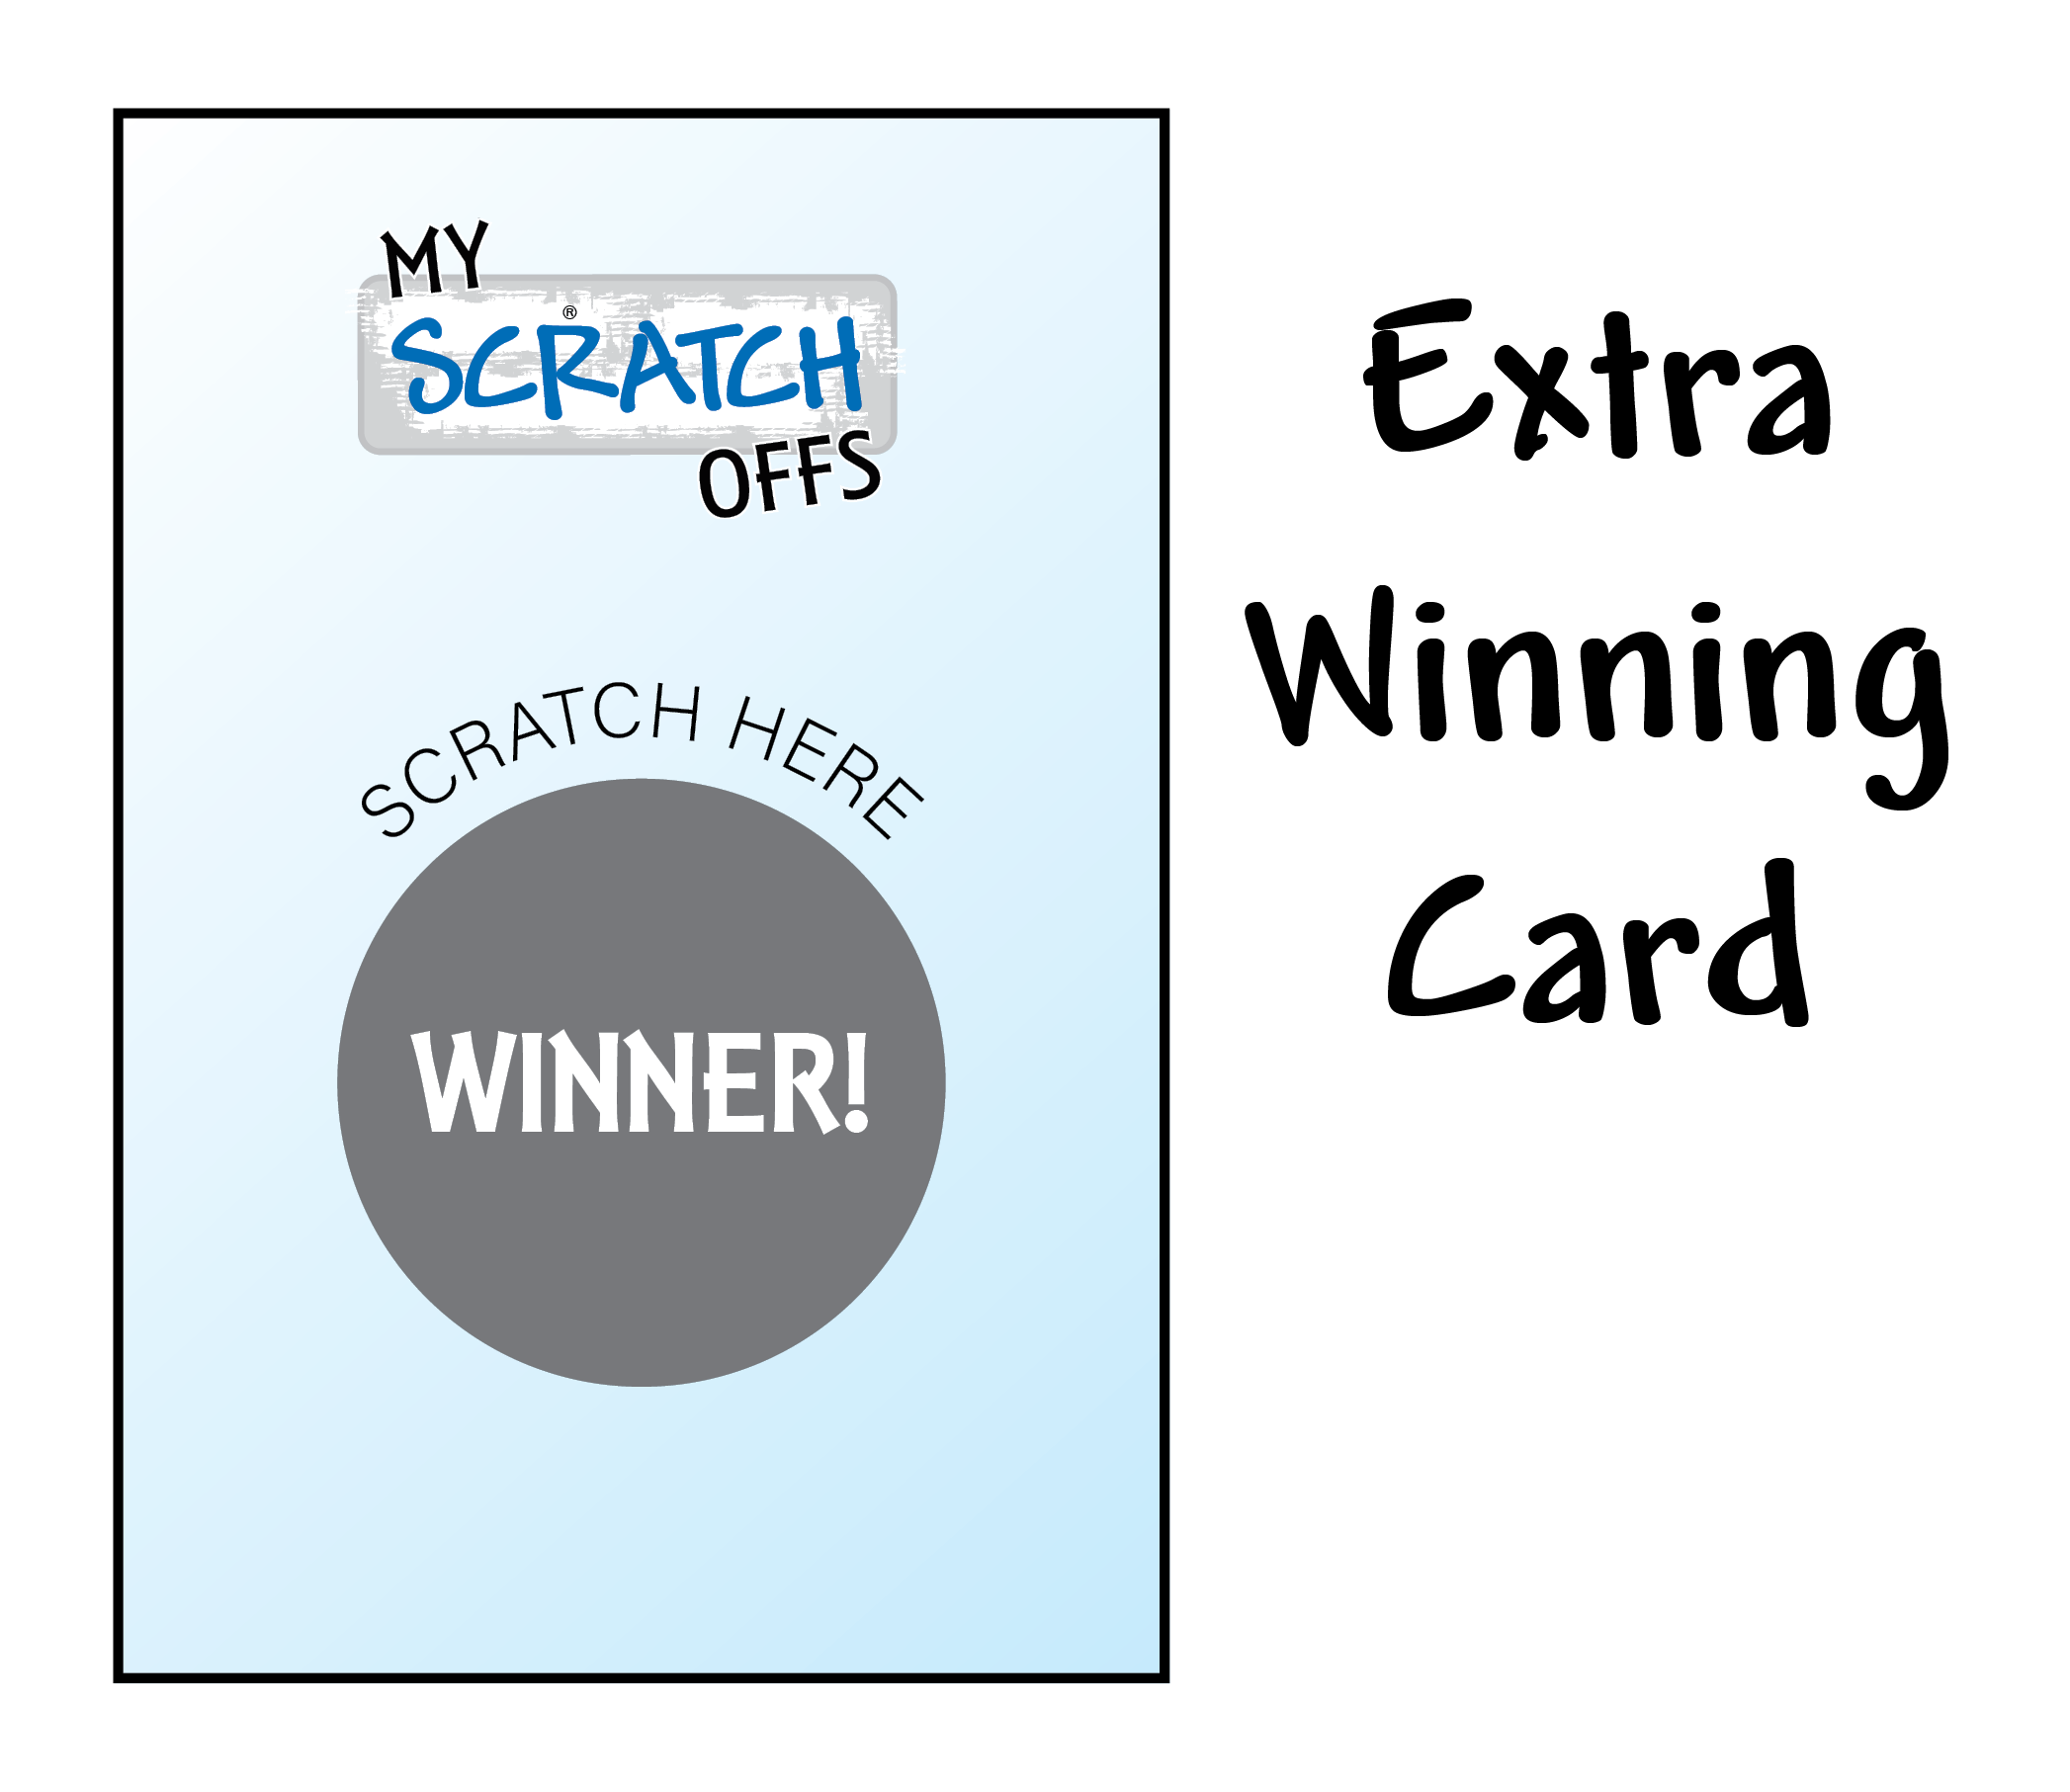 Extra Winning Card - Halloween - My Scratch Offs